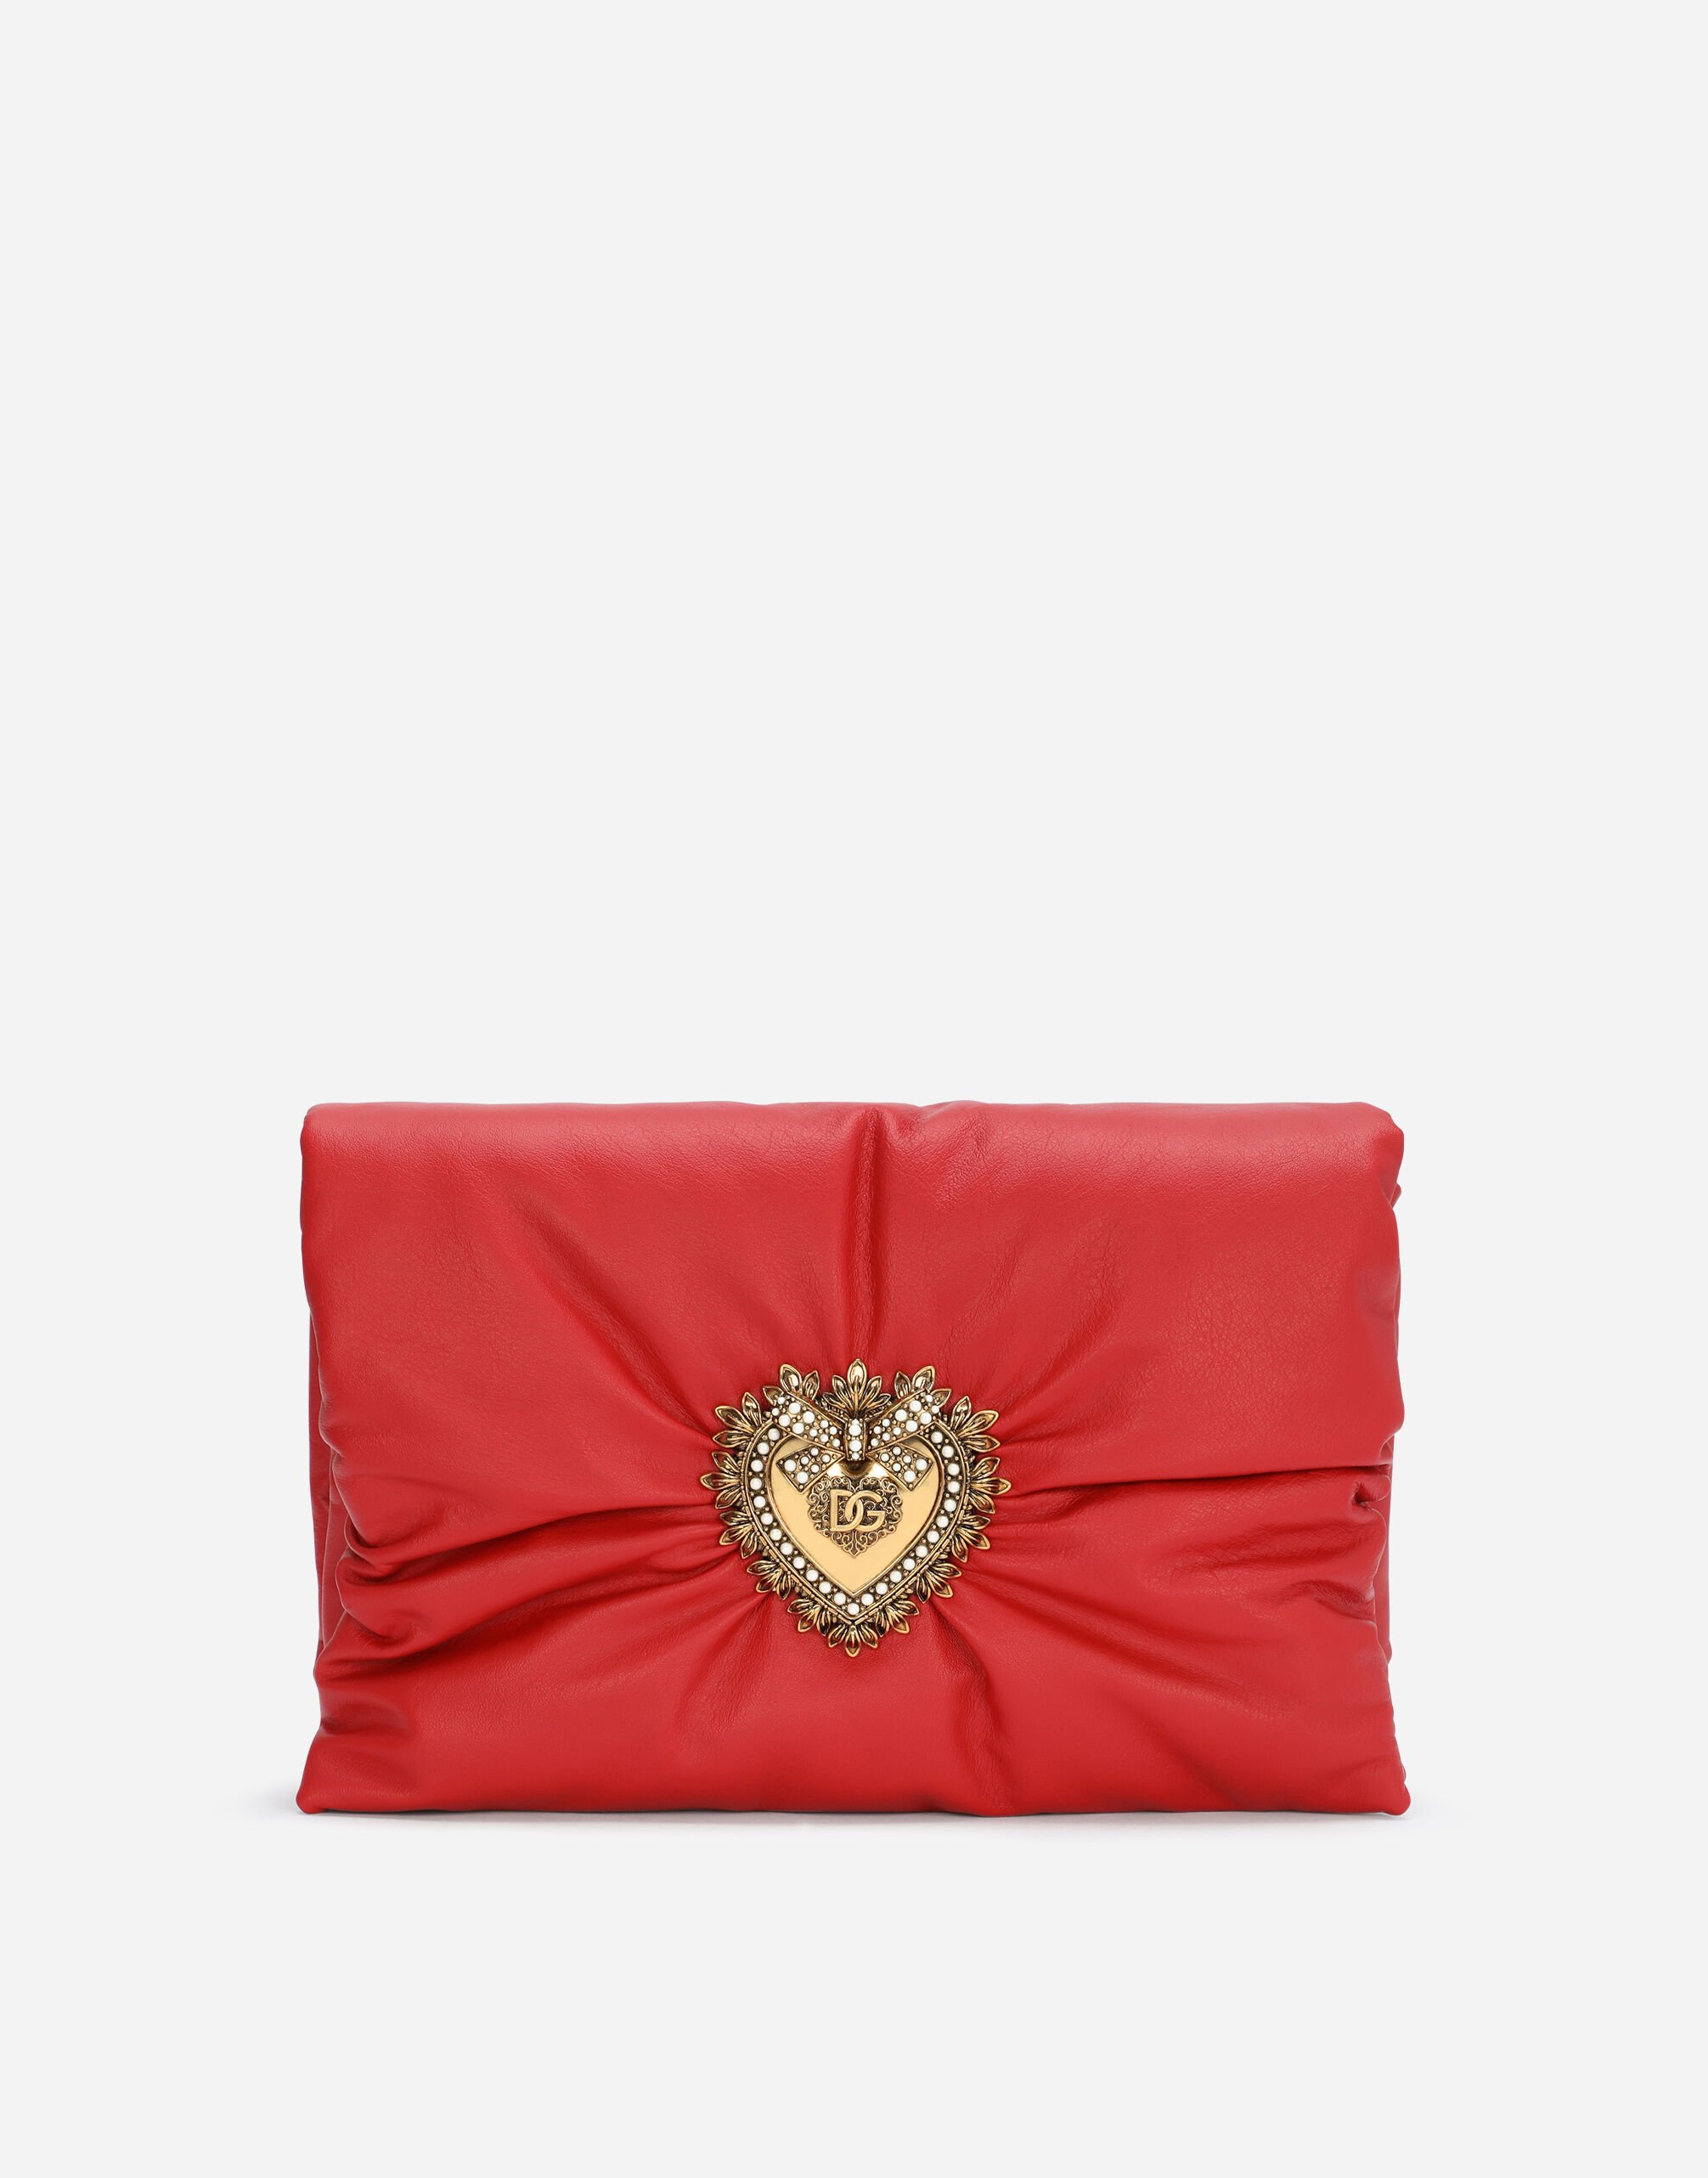 Dolce & Gabbana Medium calfskin Devotion Soft bag Red BB7158AW437